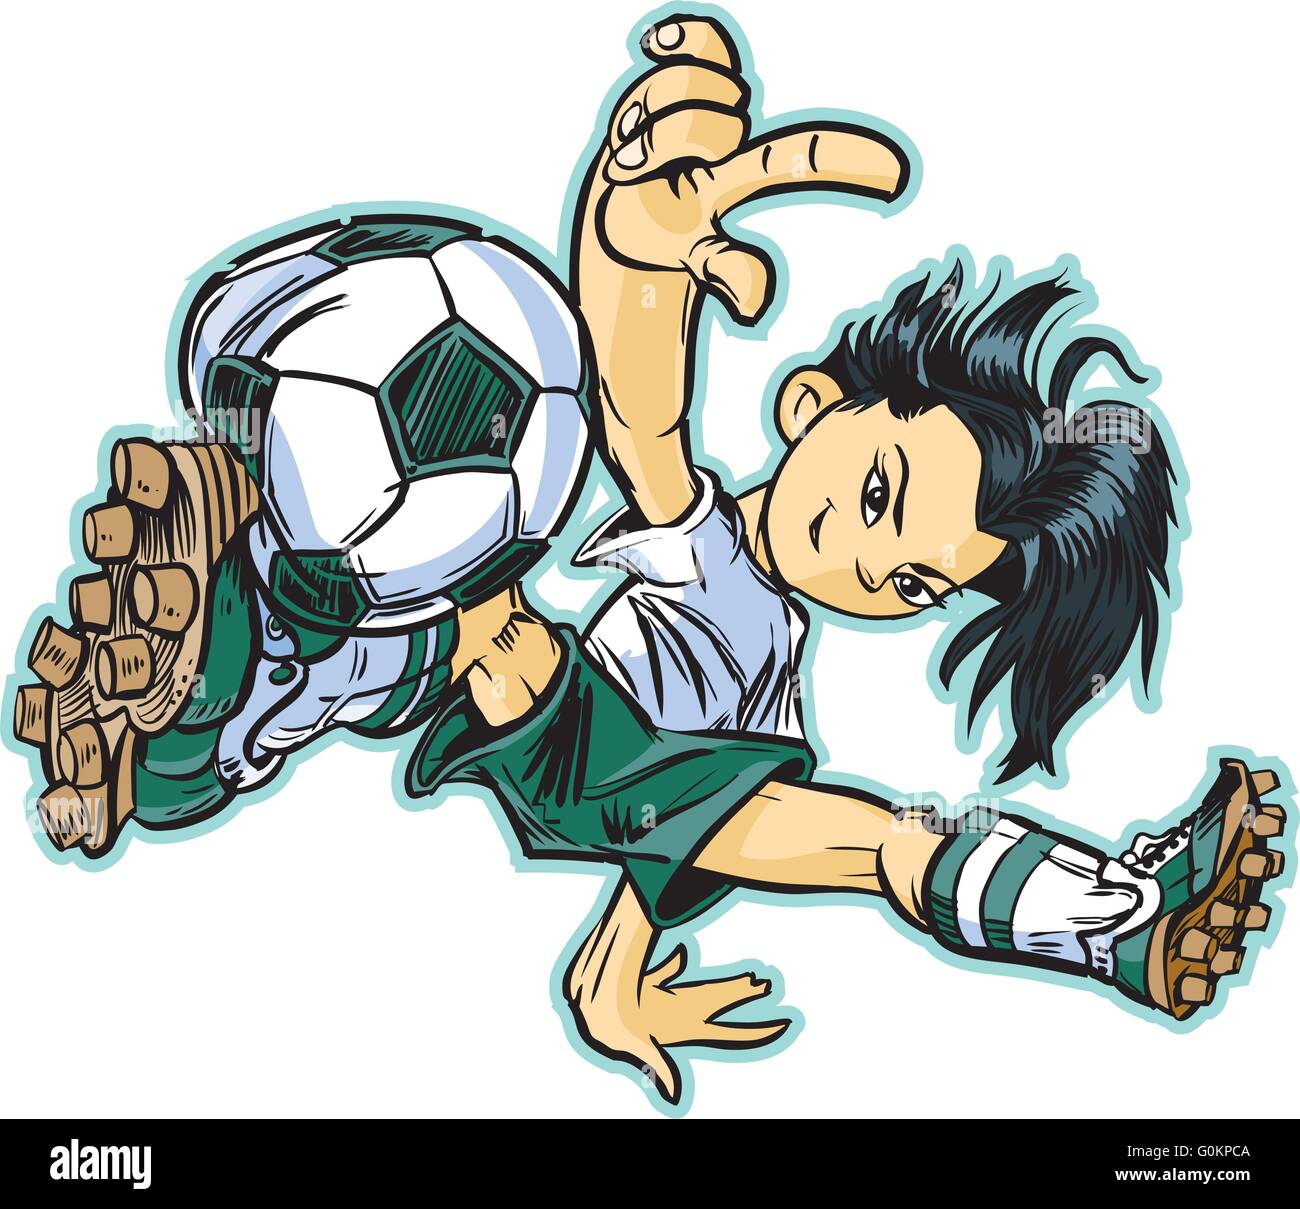 Vektor Clip Art Cartoon Eines Asiatischen Madchens Mit Einem Breakdance Bewegen Fussball Zu Spielen Stock Vektorgrafik Alamy